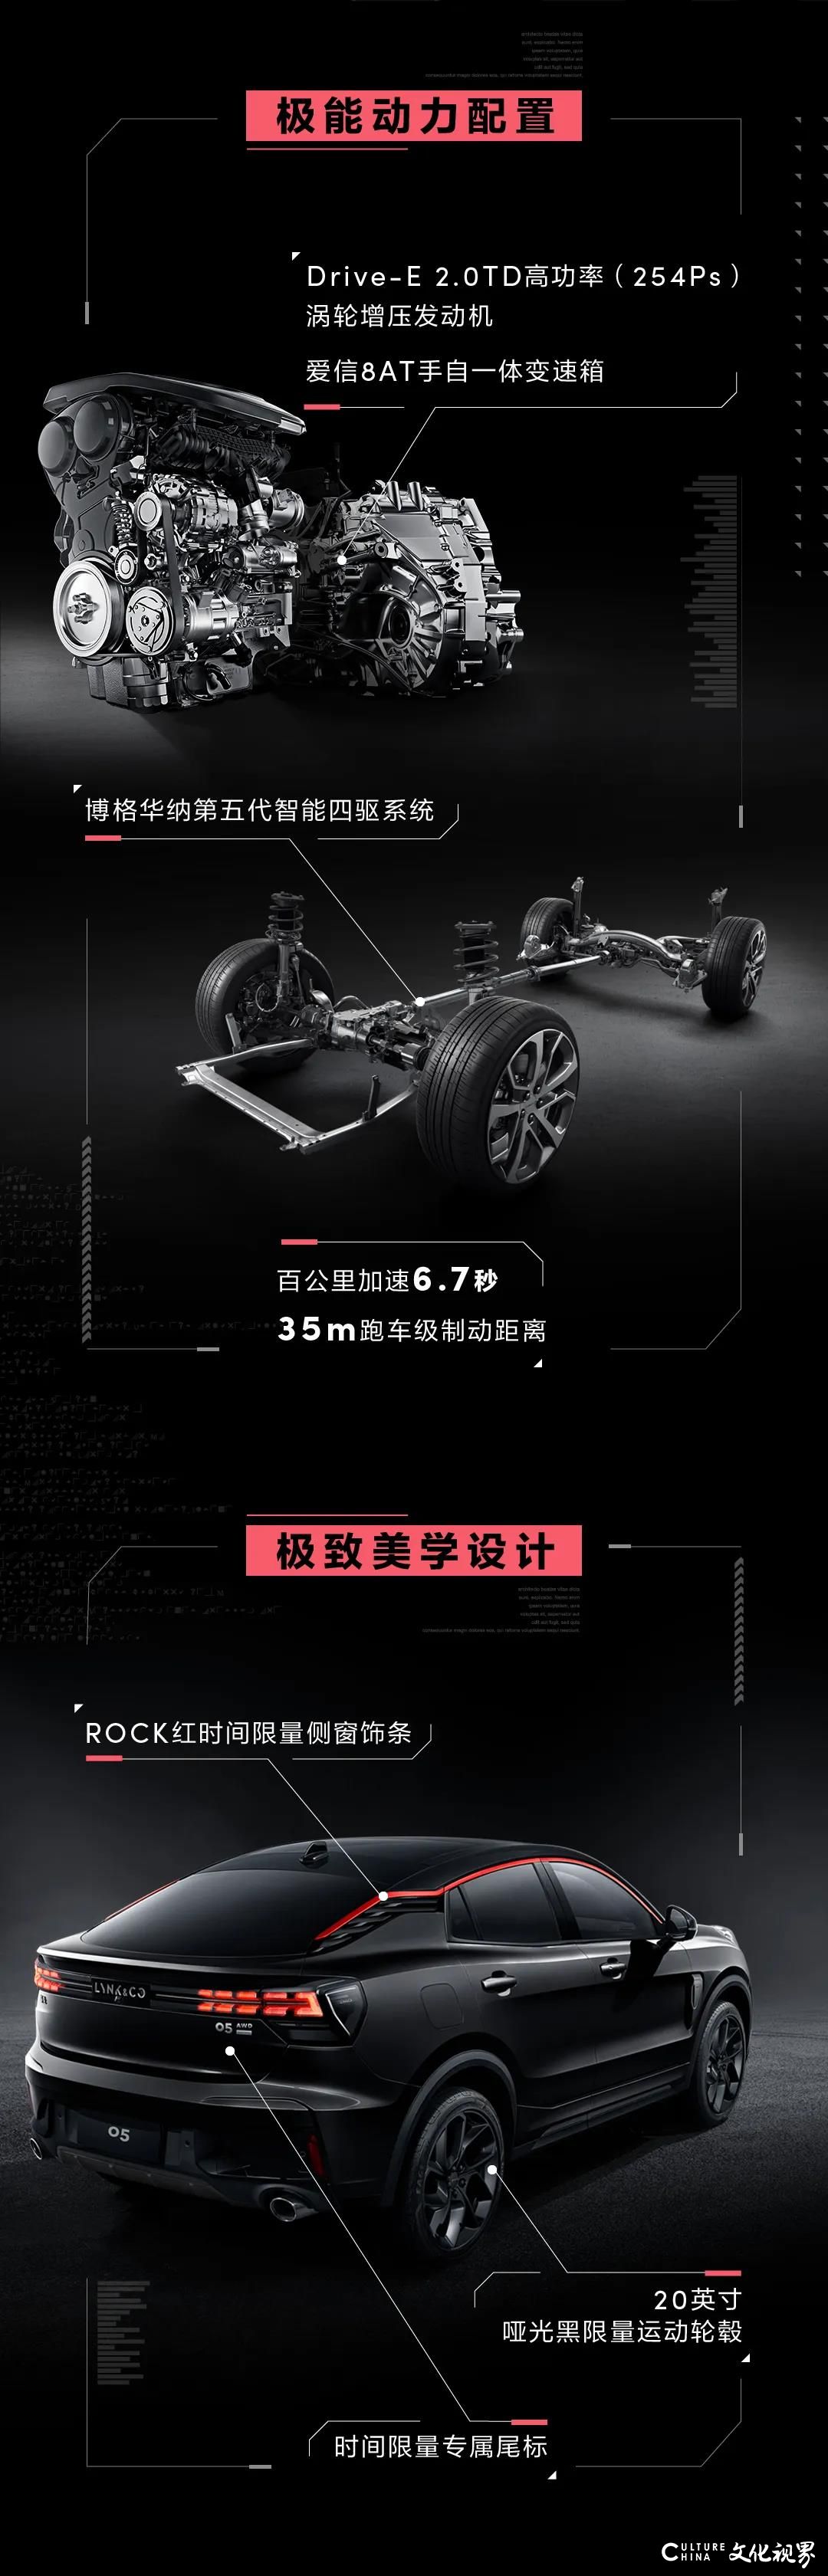 极能动力配置  极致美学设计——领克05全系预售开启  预售价18-22万元